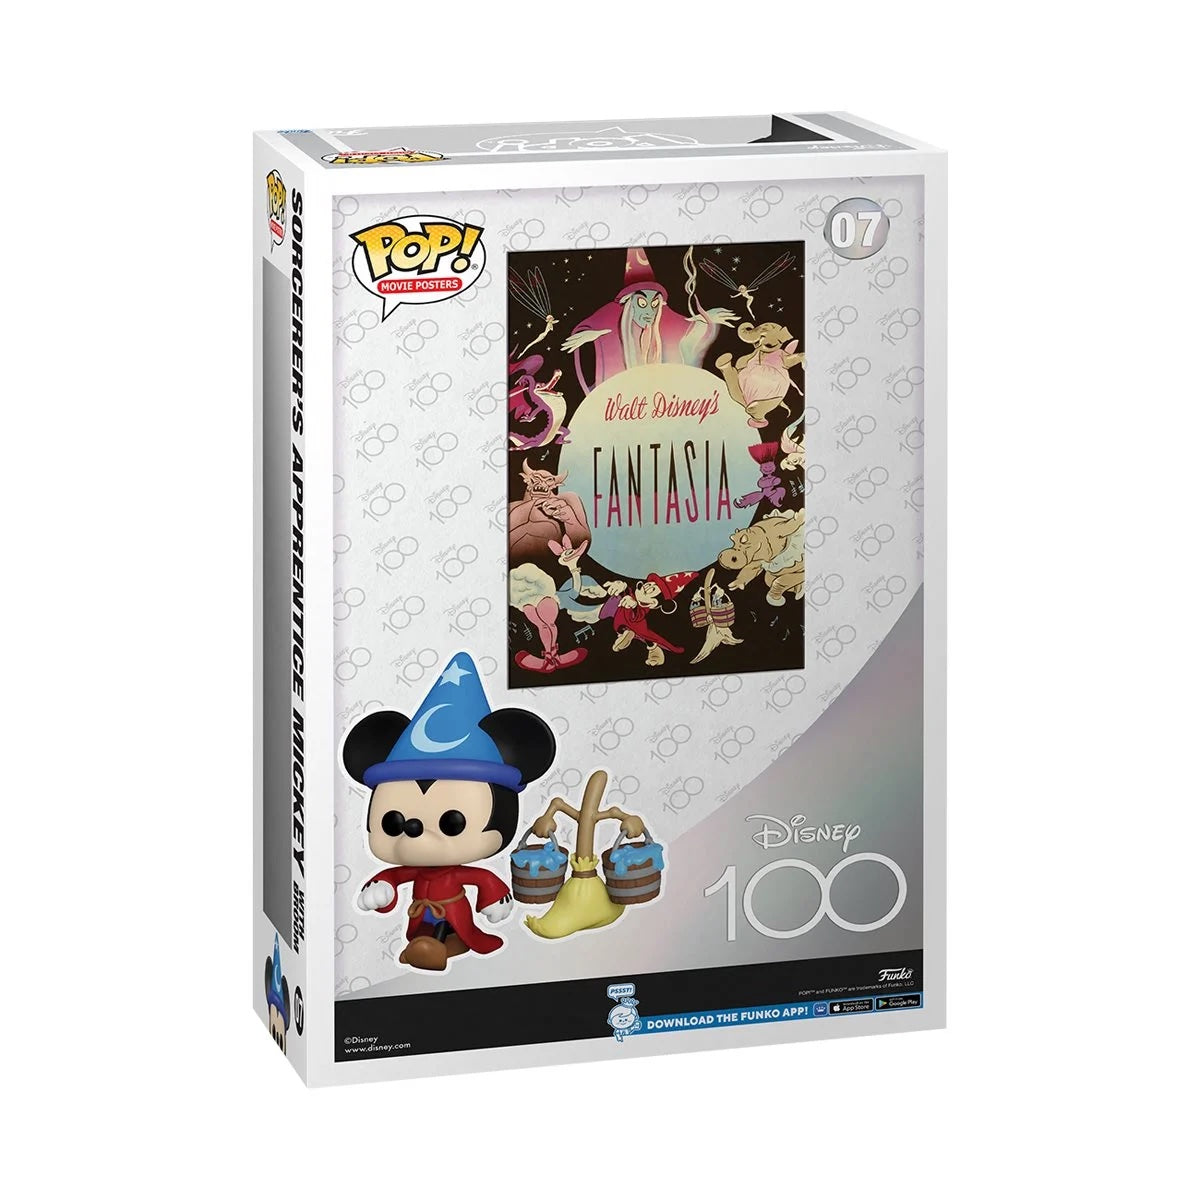 Funko Pop! Movie Poster: Disney 100 - Fantasia Sorcerer's Apprentice Mickey with Broom